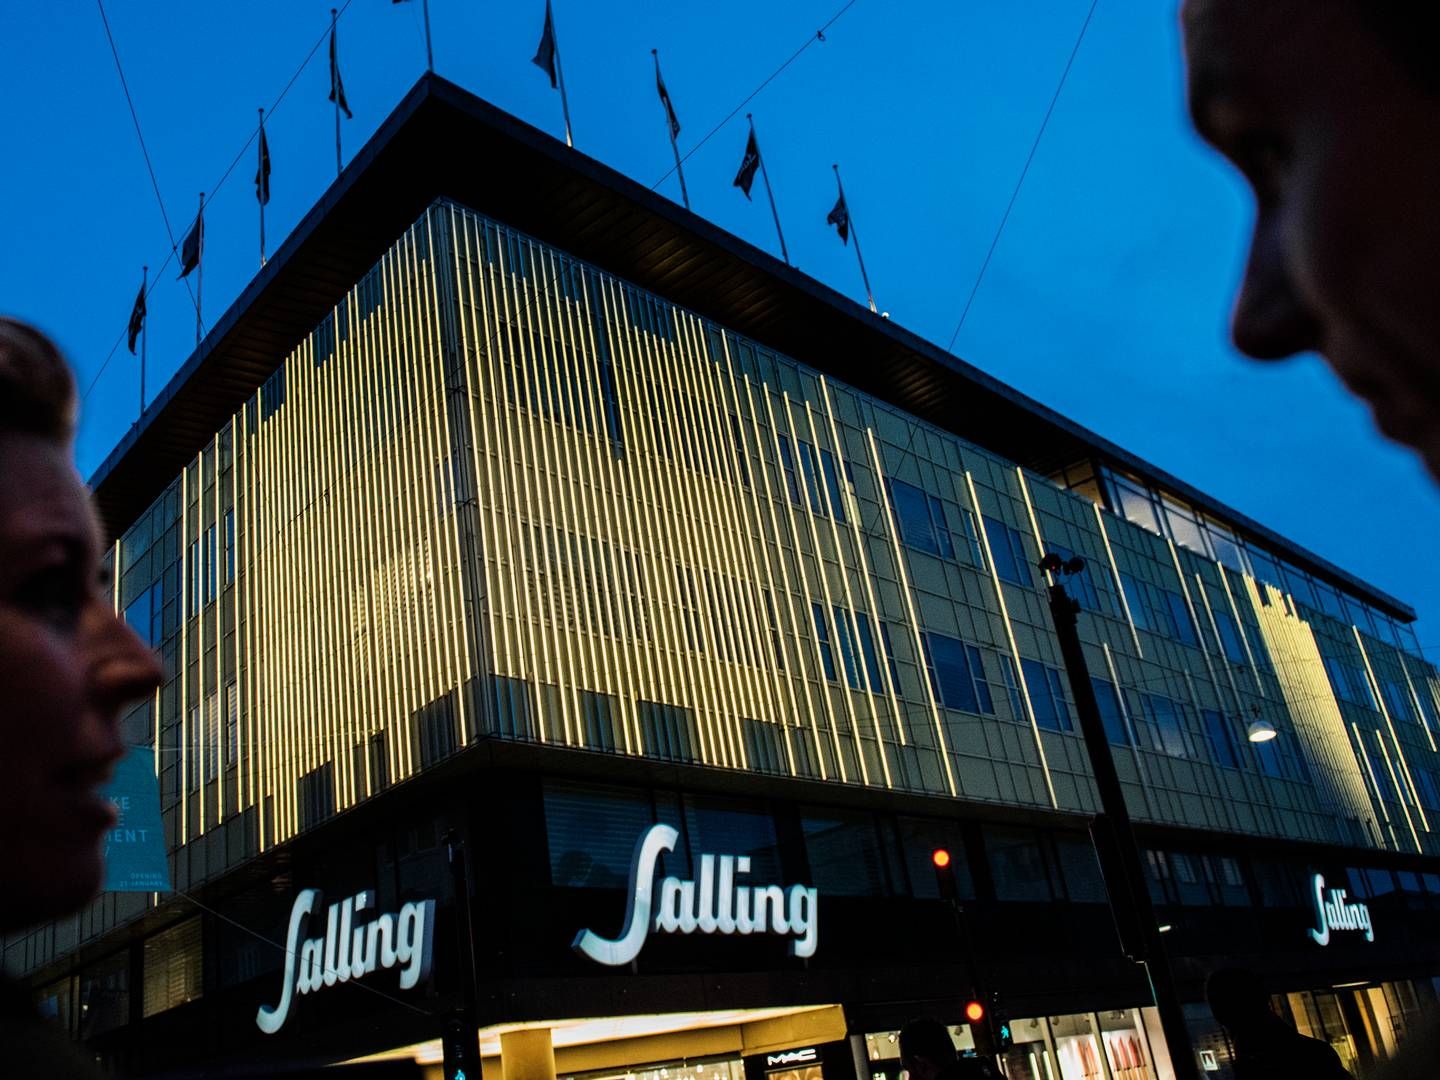 Sallings stormagasiner ligger i Aalborg og Aarhus. | Foto: Casper Dalhoff